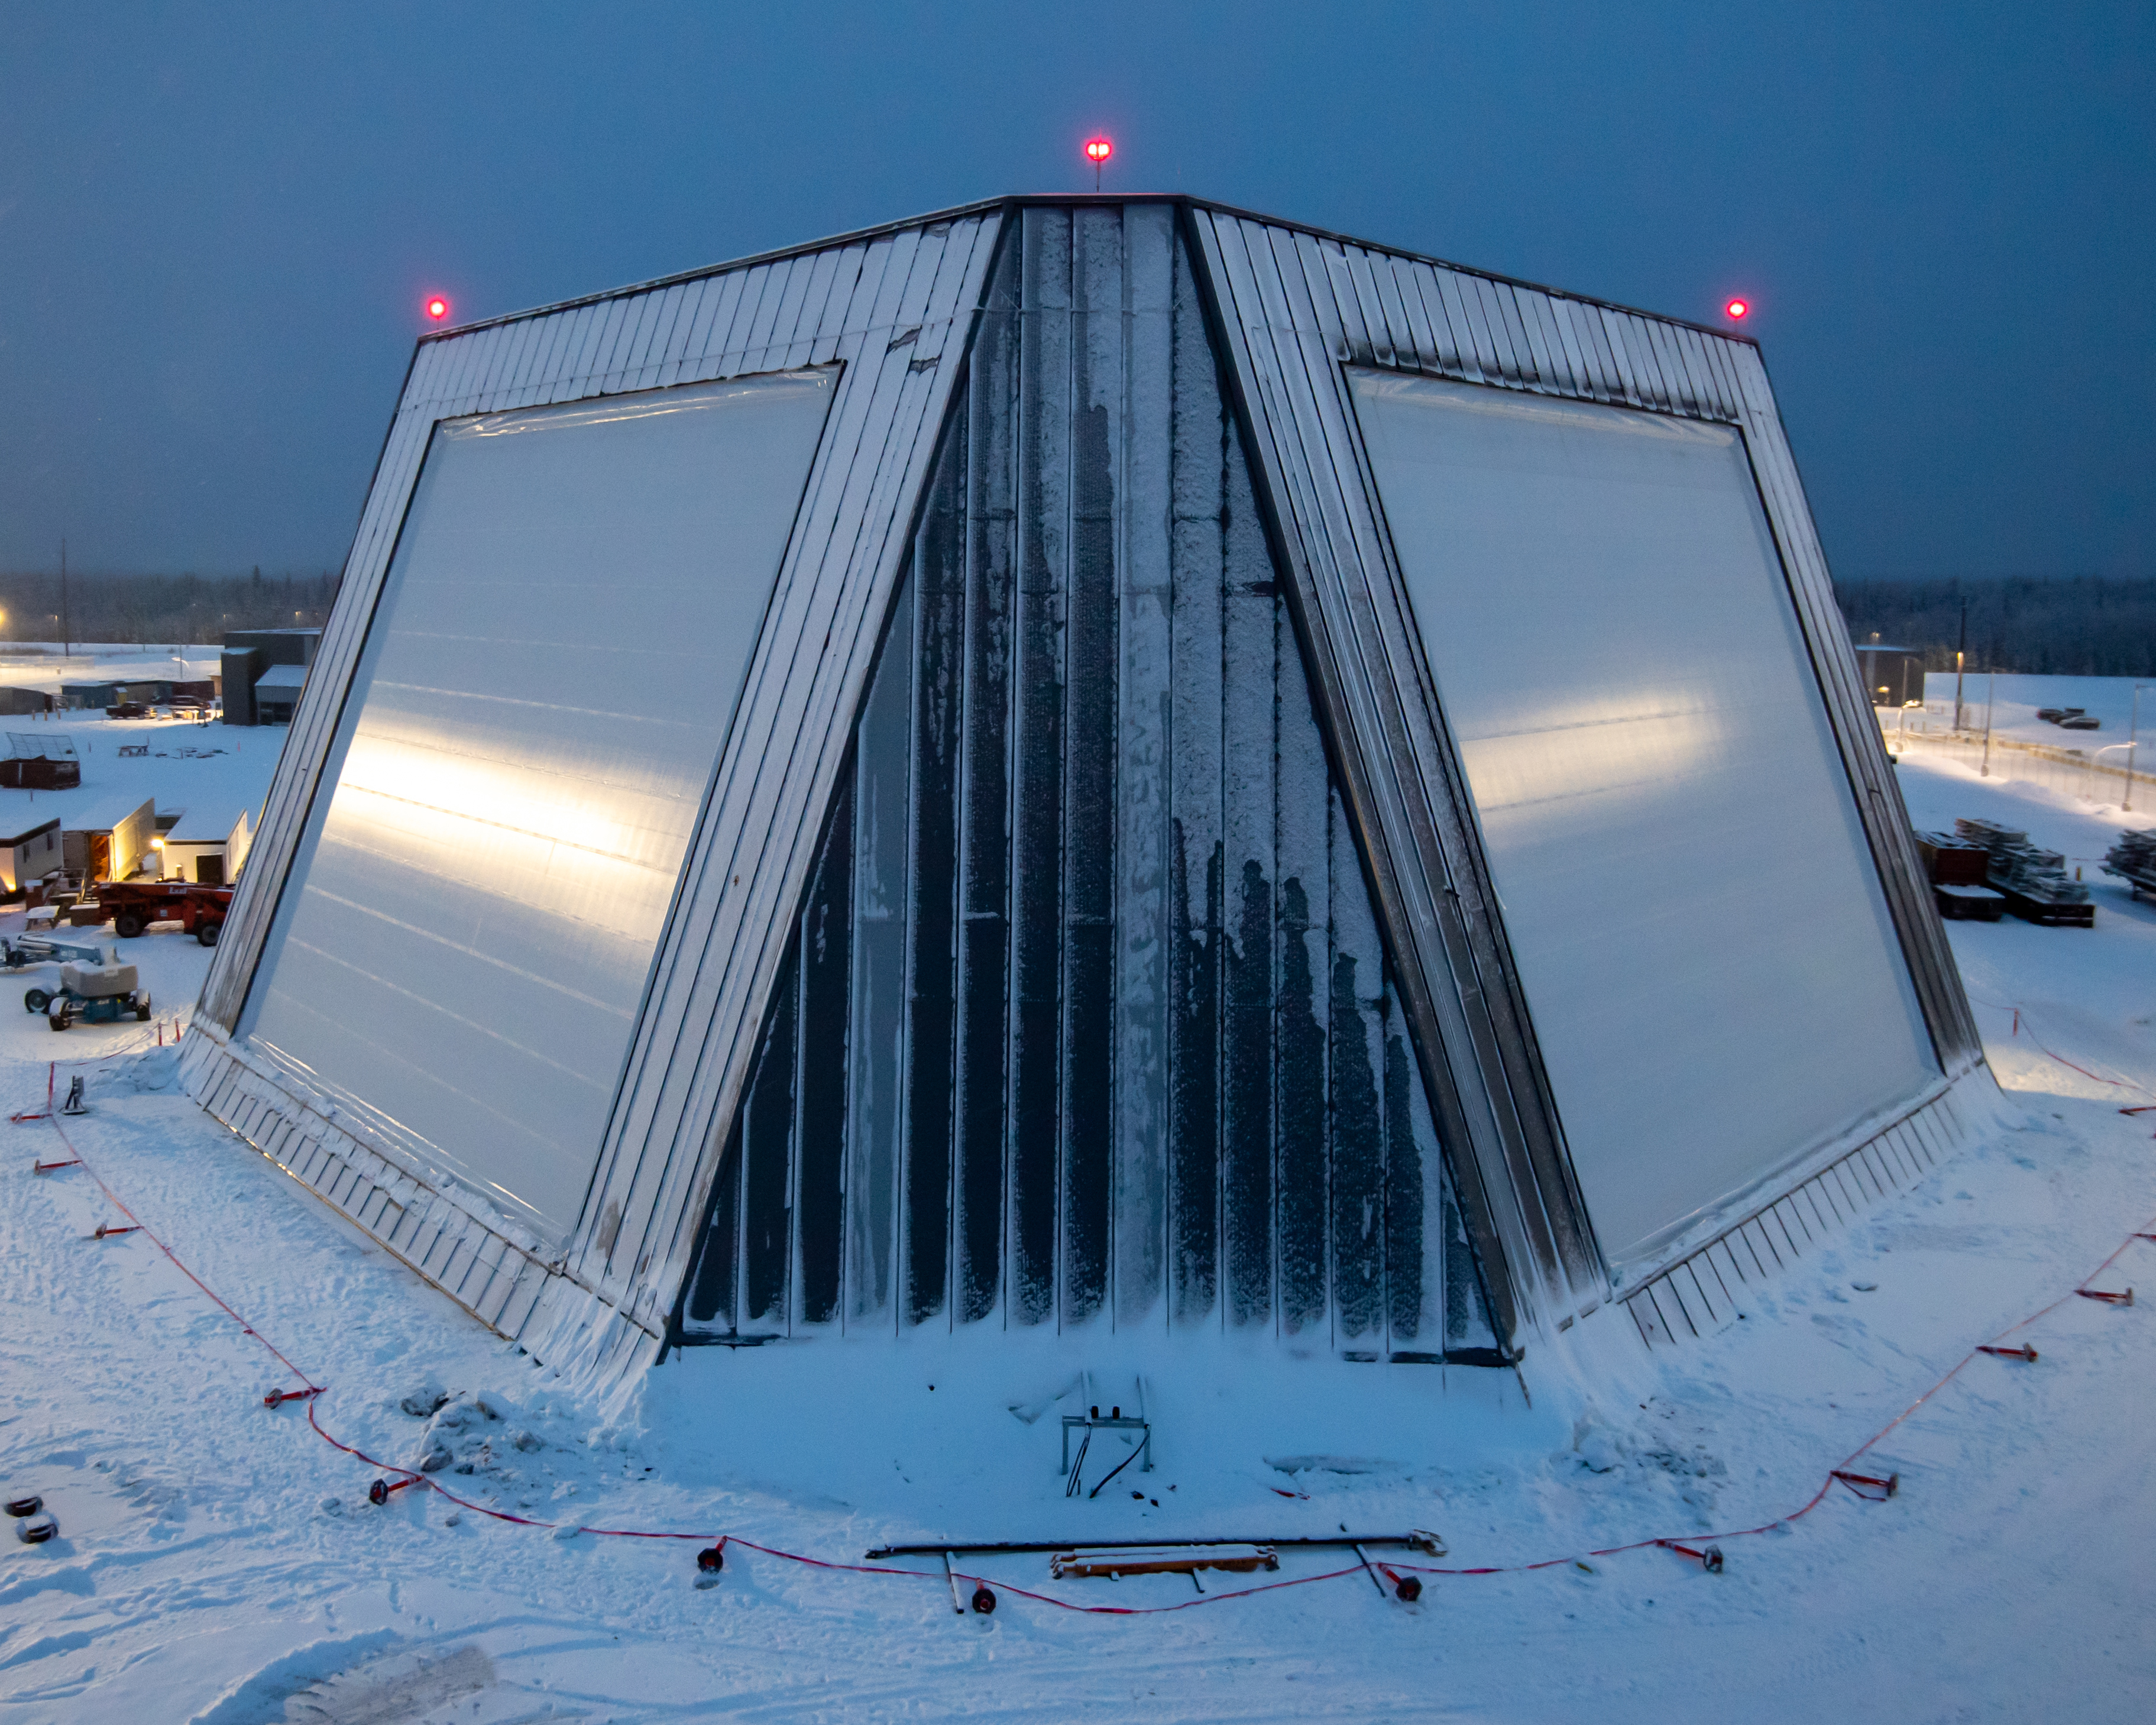 The Long Range Discrimination Radar (LRDR) at Clear Space Force Station in Alaska